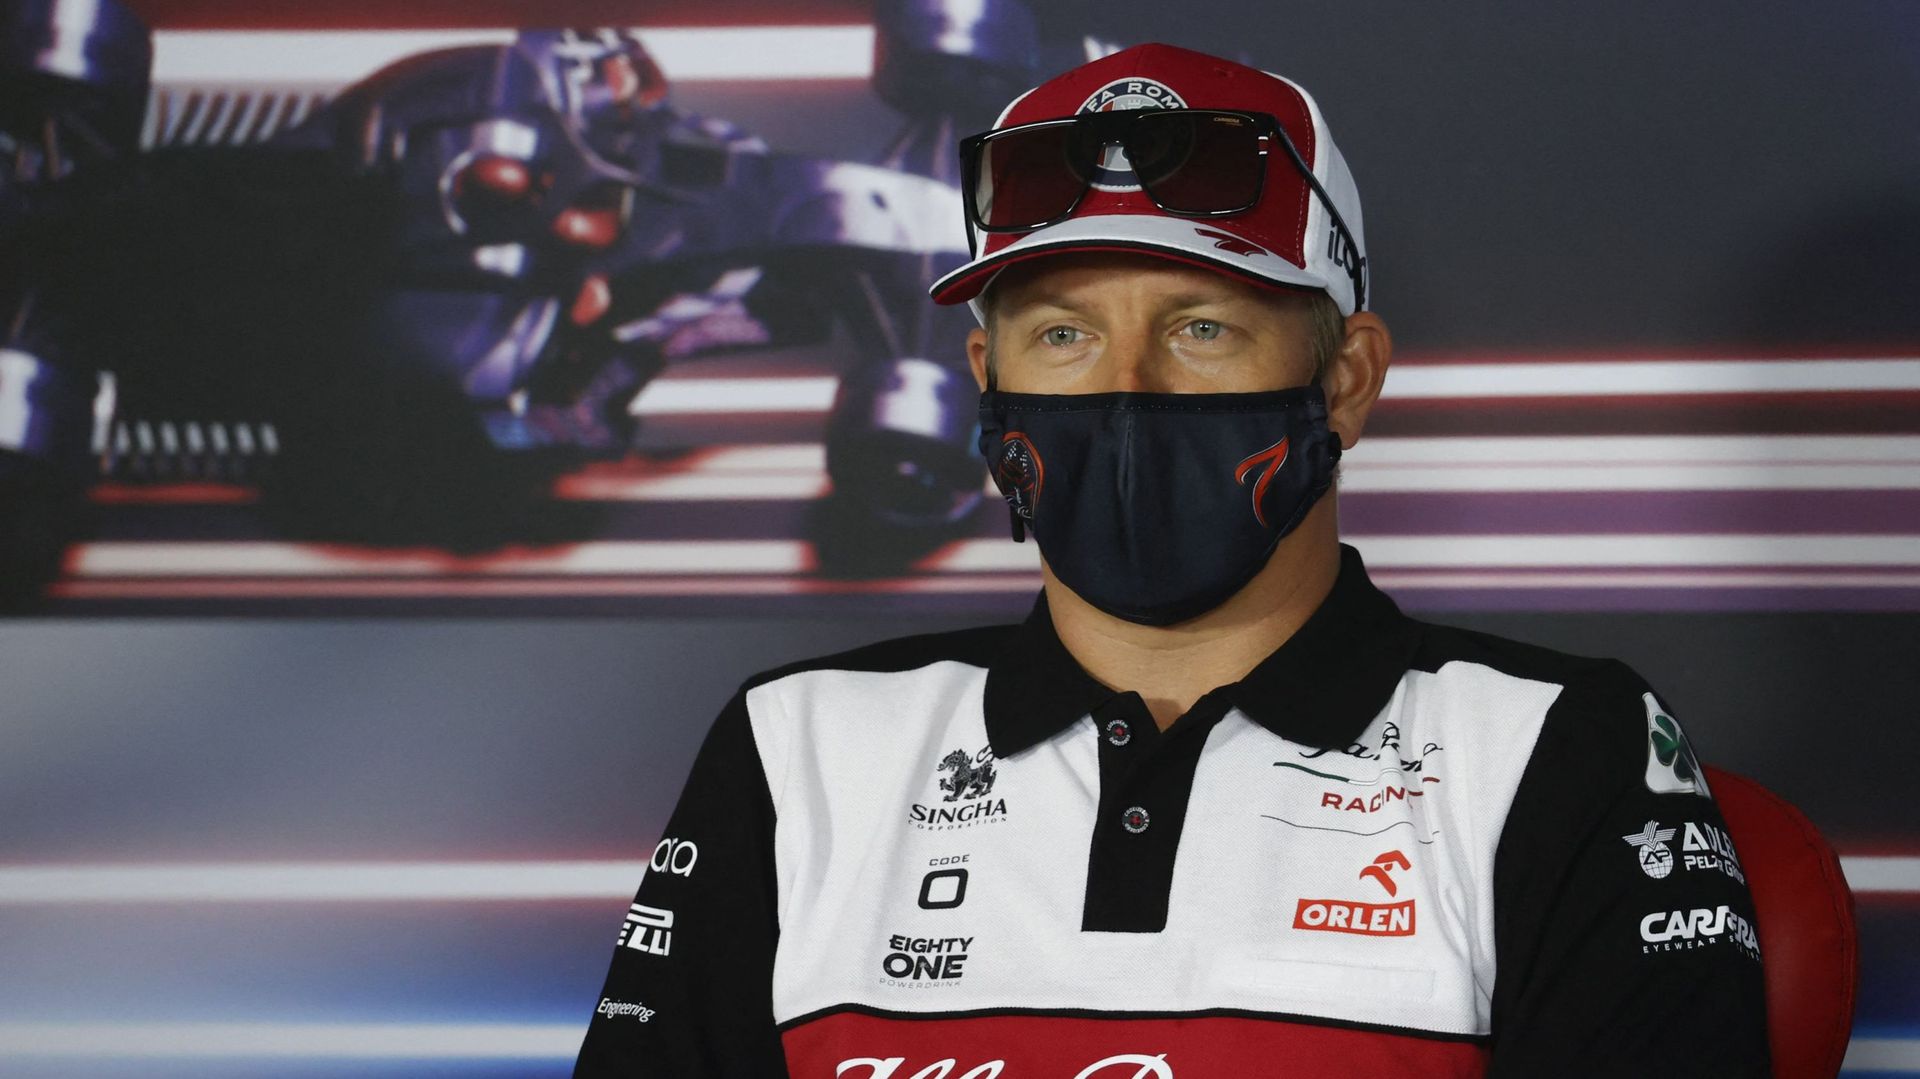 Le Finlandais Kimi Räikkönen, champion du monde en 2007, va mettre un terme à sa carrière de pilote de Formule 1 au terme de la saison. Le pilote Alfa Romeo, 41 ans, l’a annoncé mercredi sur les réseaux sociaux.